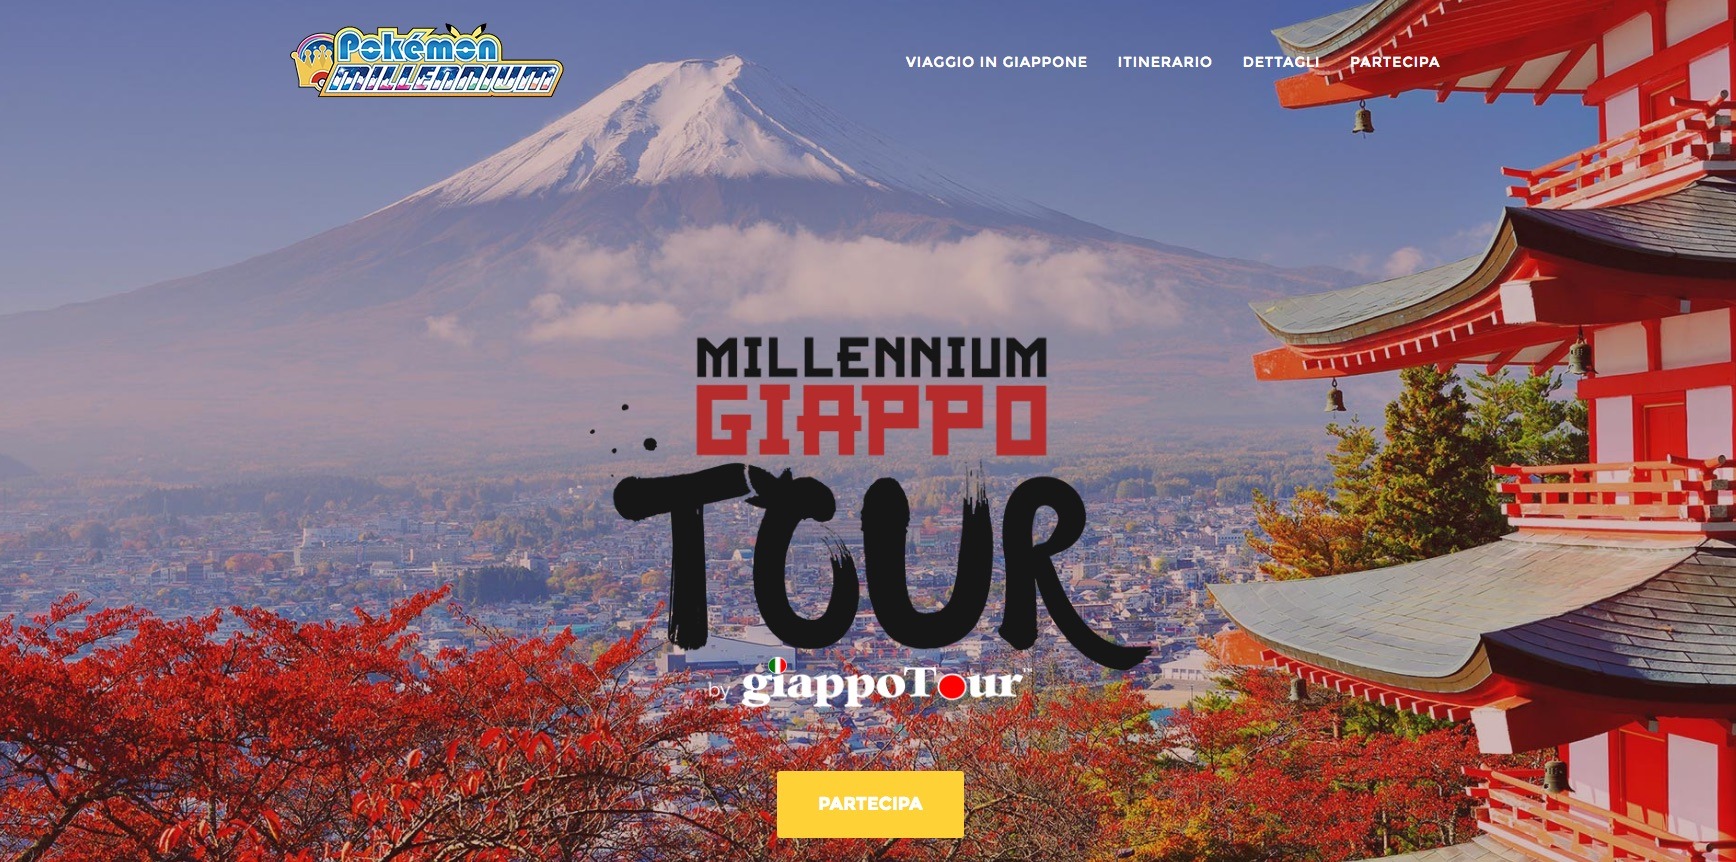 Millennium Giappo Tour